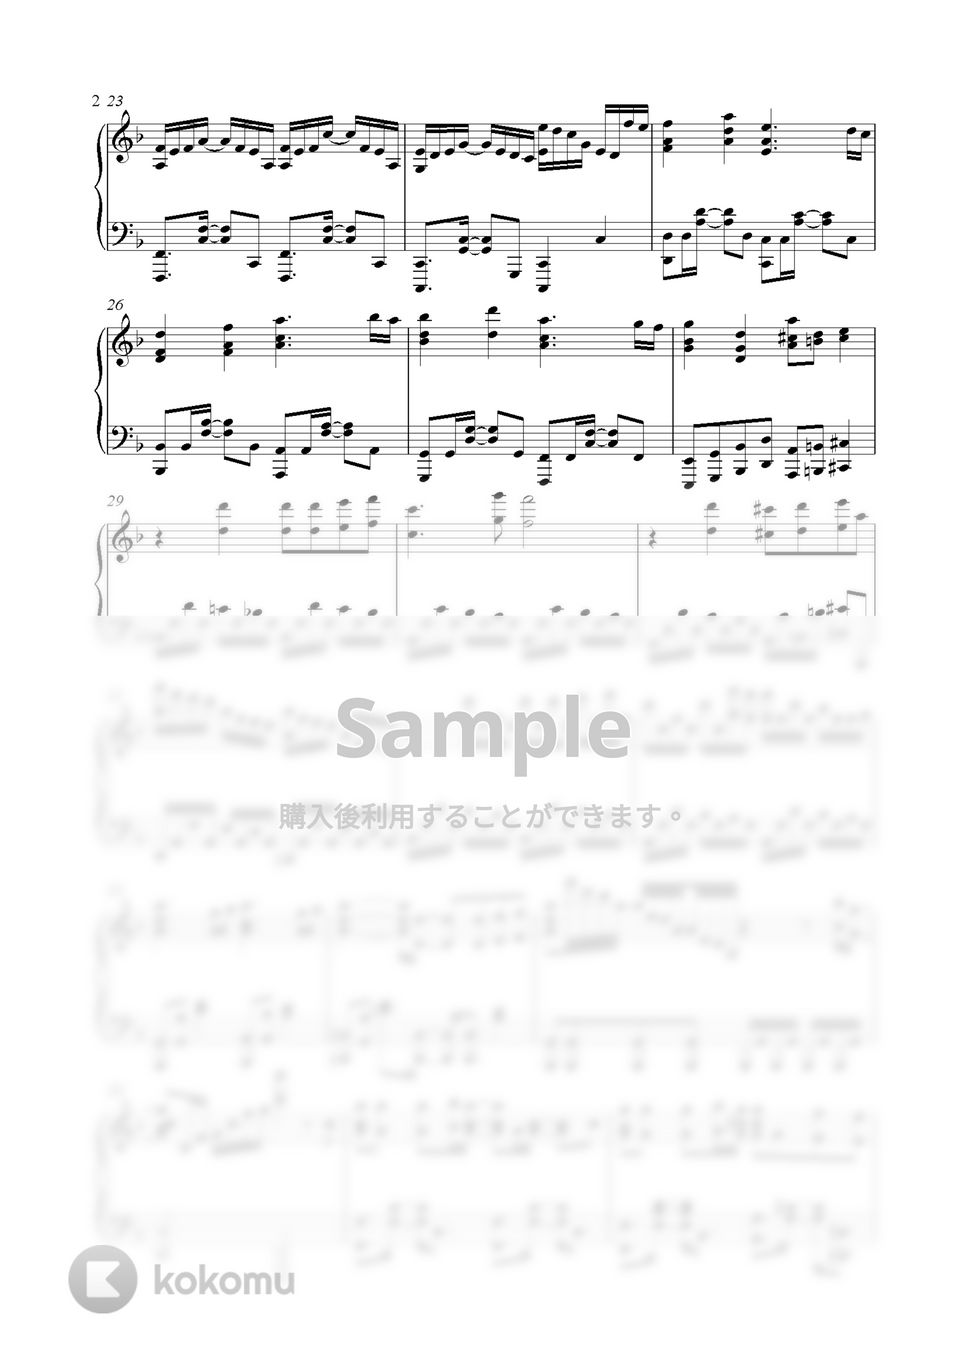 鬼滅の刃 - 竈門炭治郎のうた (Piano Ver.) by GoGoPiano